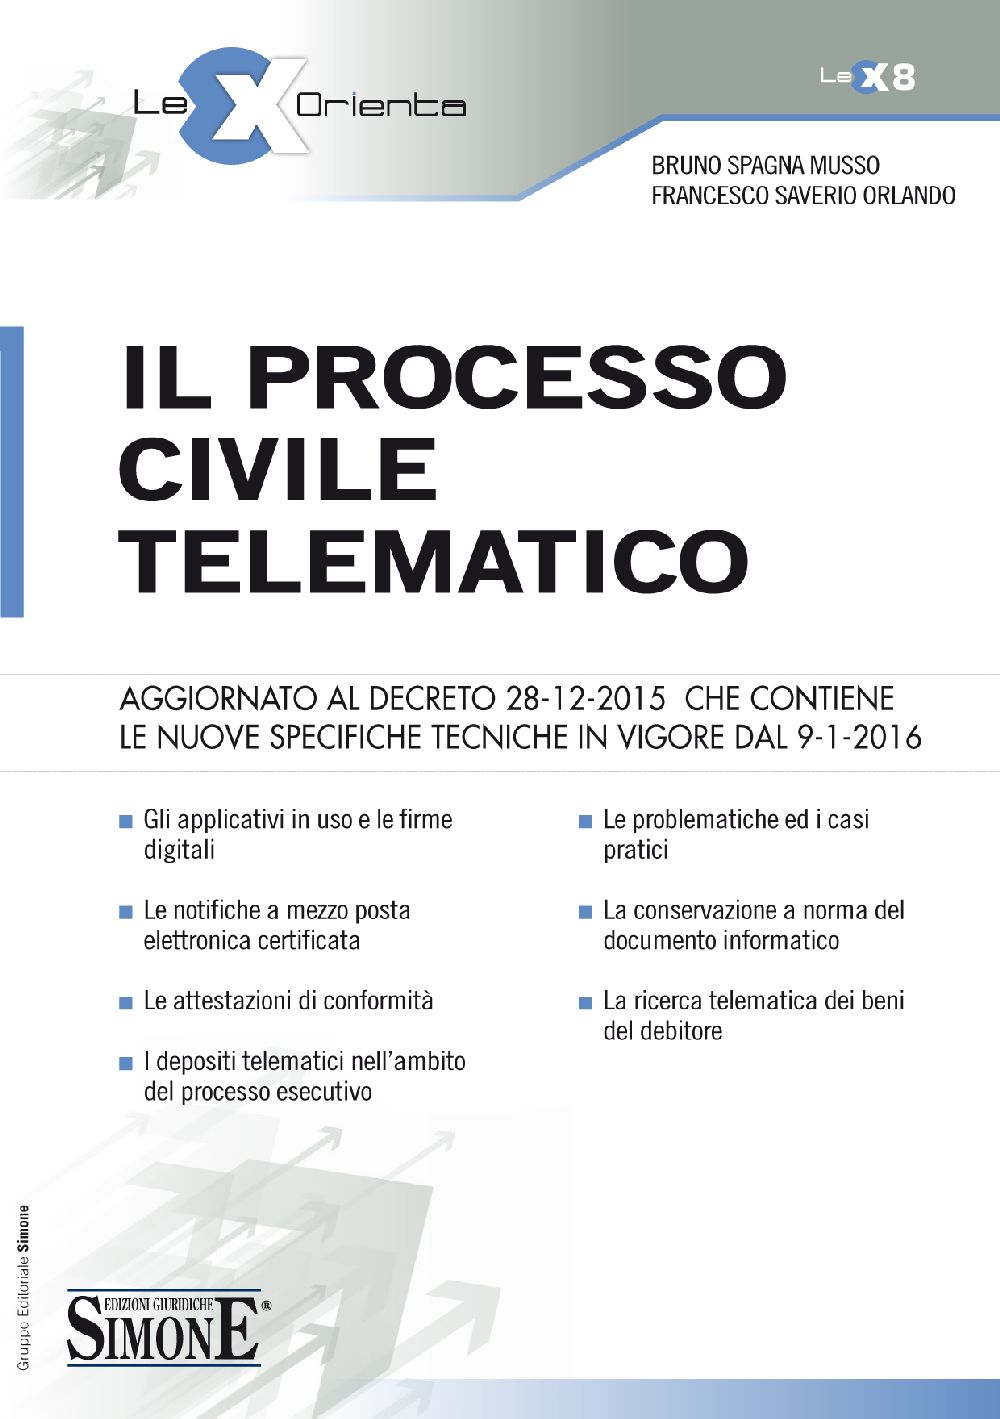 Il Processo Civile Telematico - LEX8